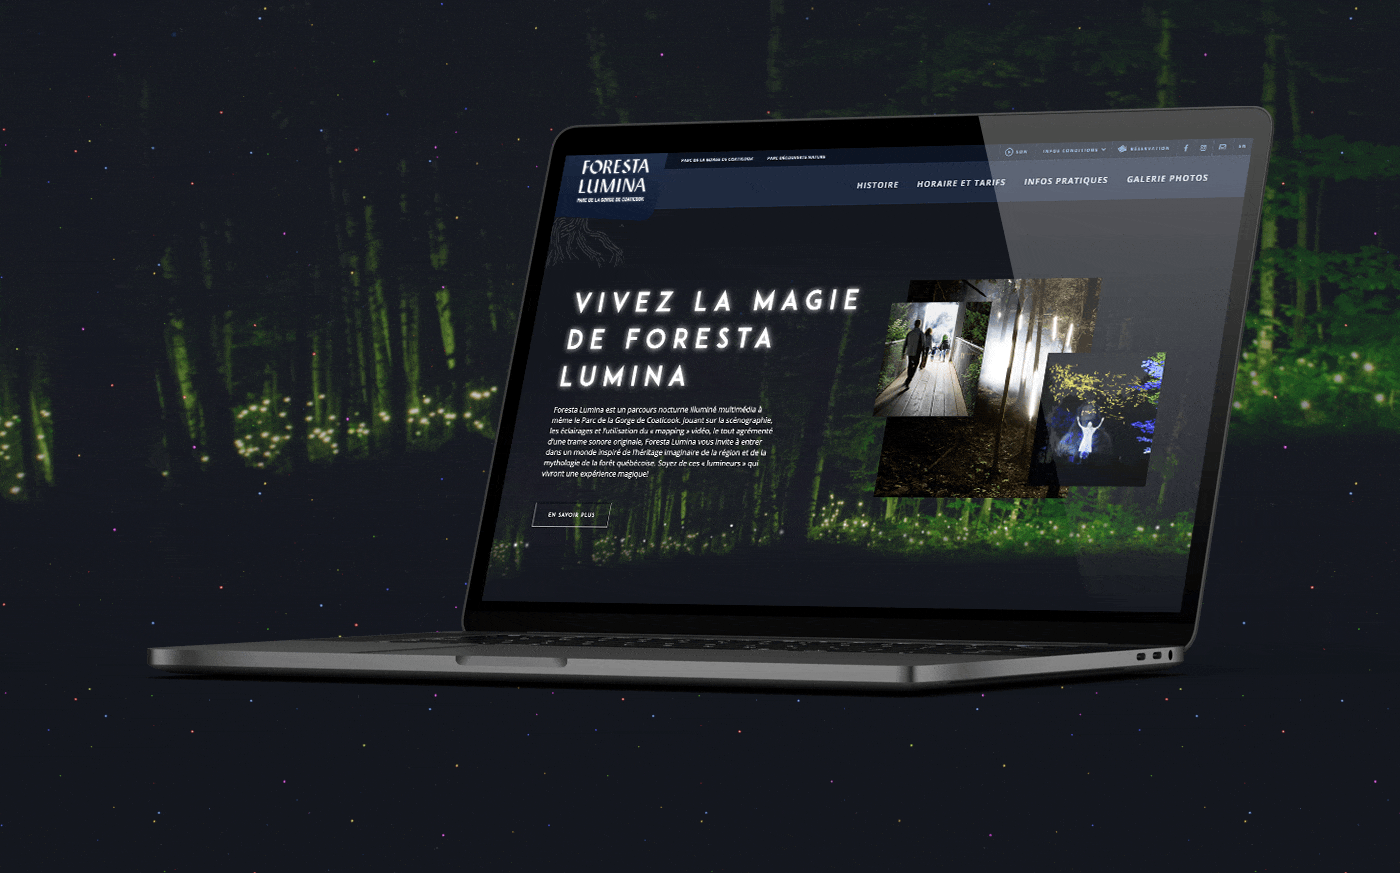 Conception d'un site web bilingue pour Foresta Lumina - attraits touristiques d'une expérience immersive de Coaticook / 2017 - Réalisation signée Projex Media